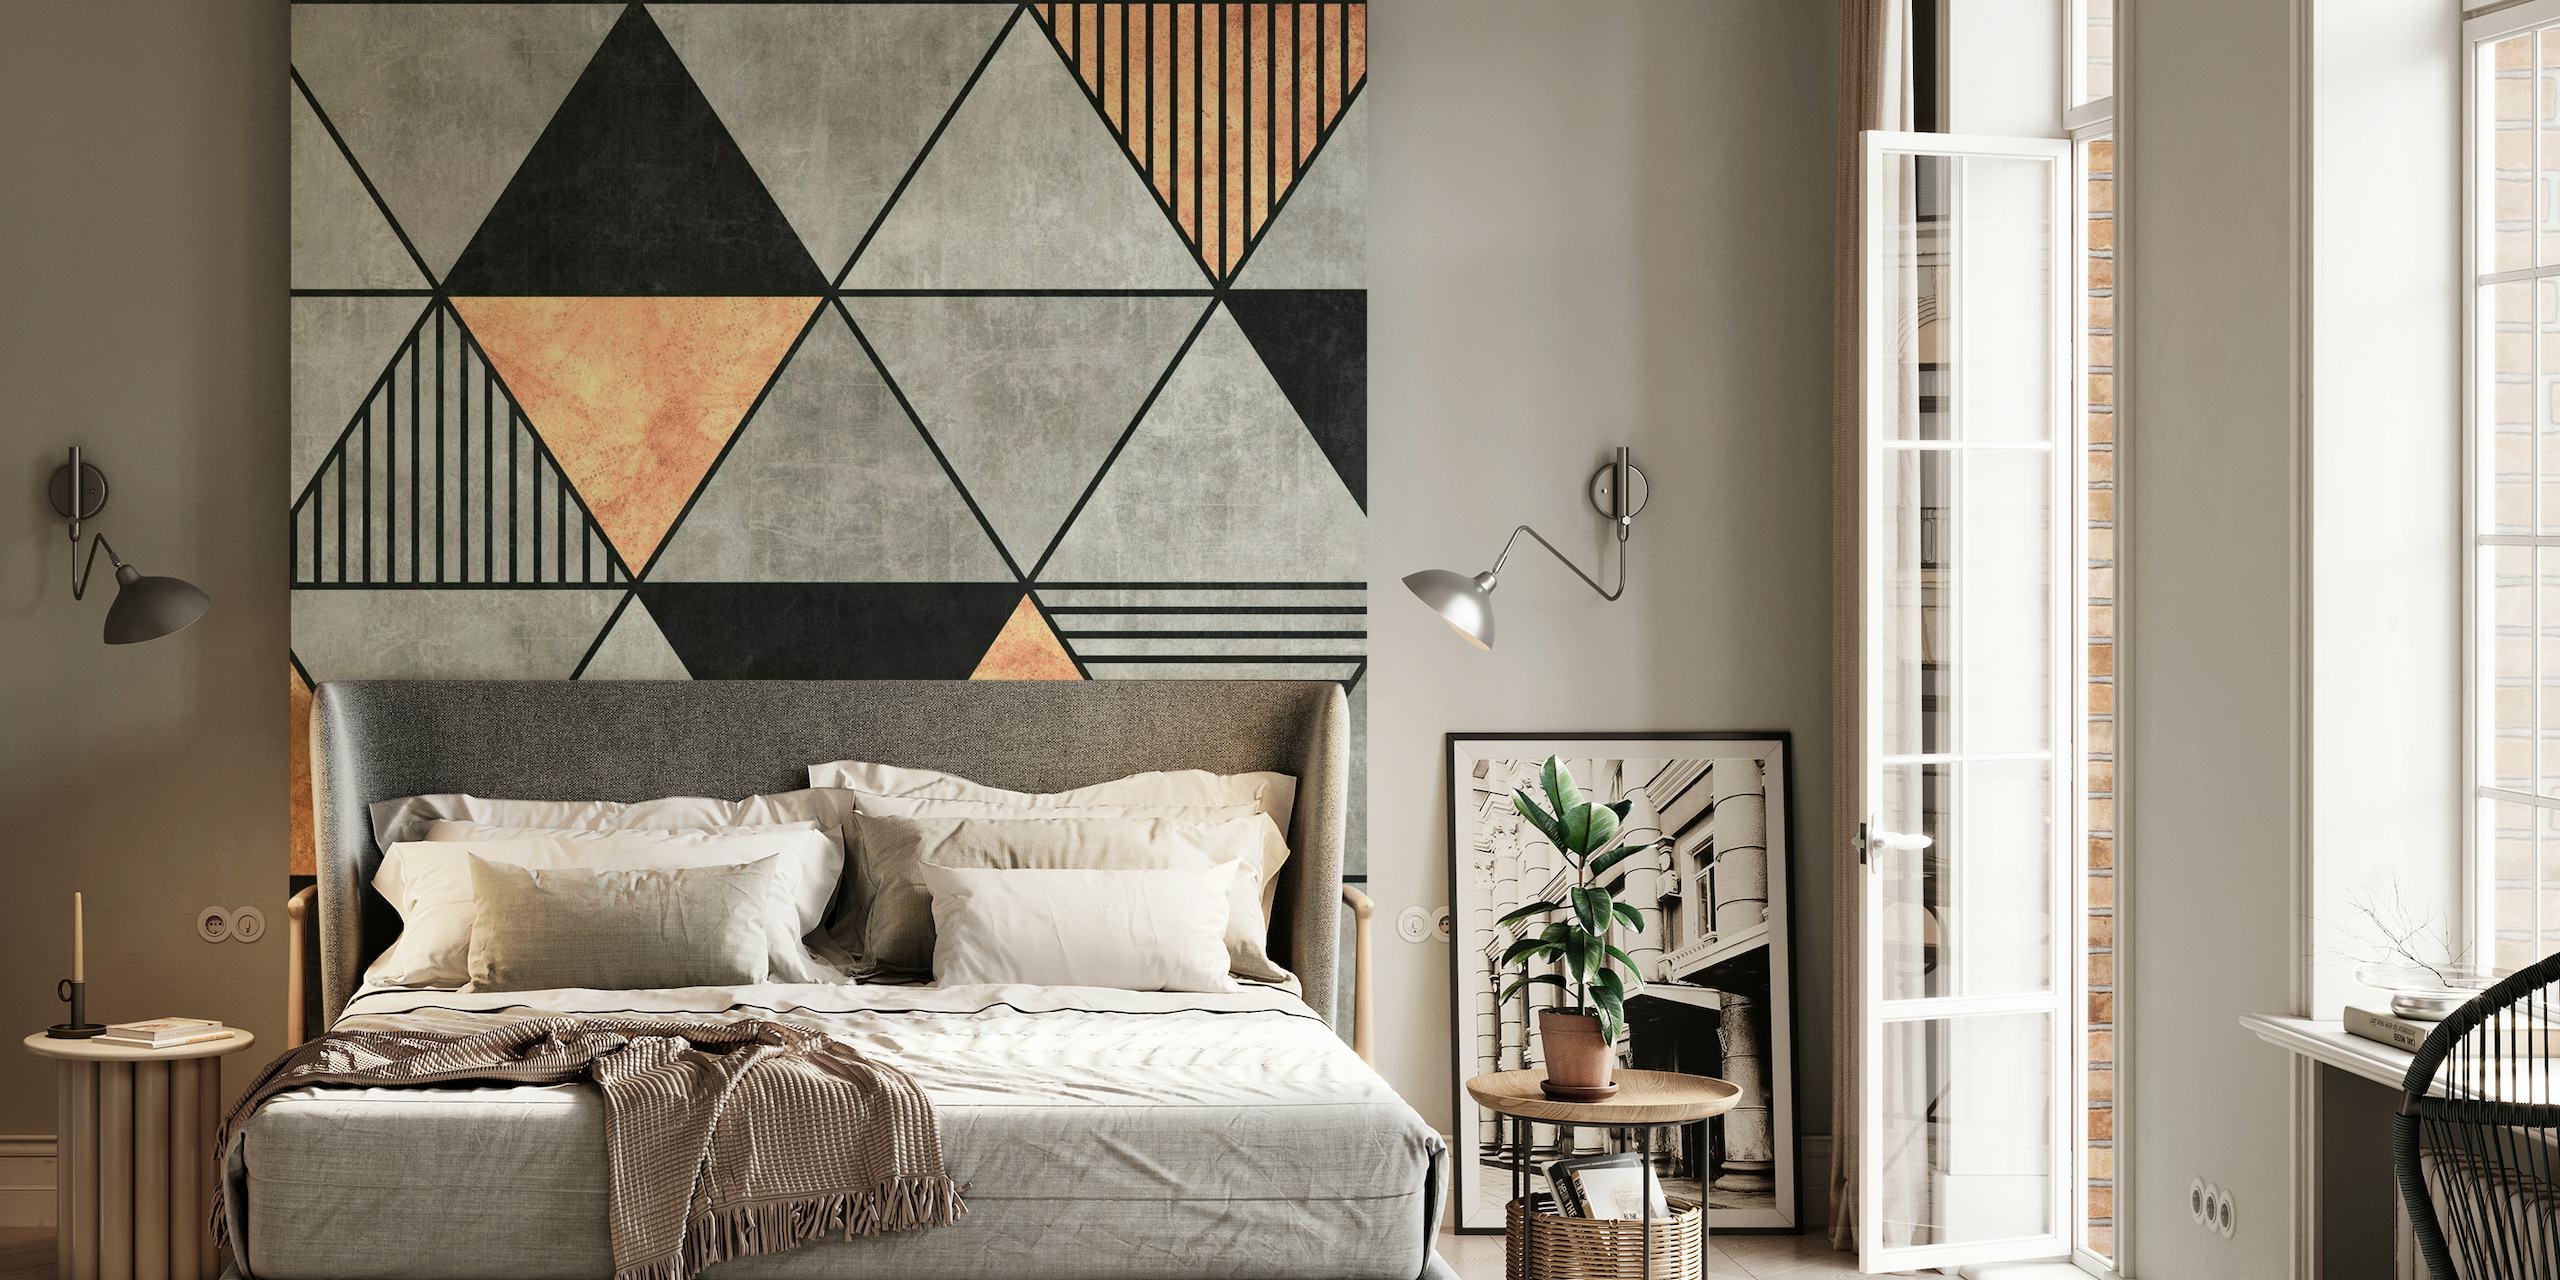 Vægmaleri med geometrisk mønster i beton og kobbertrekanter